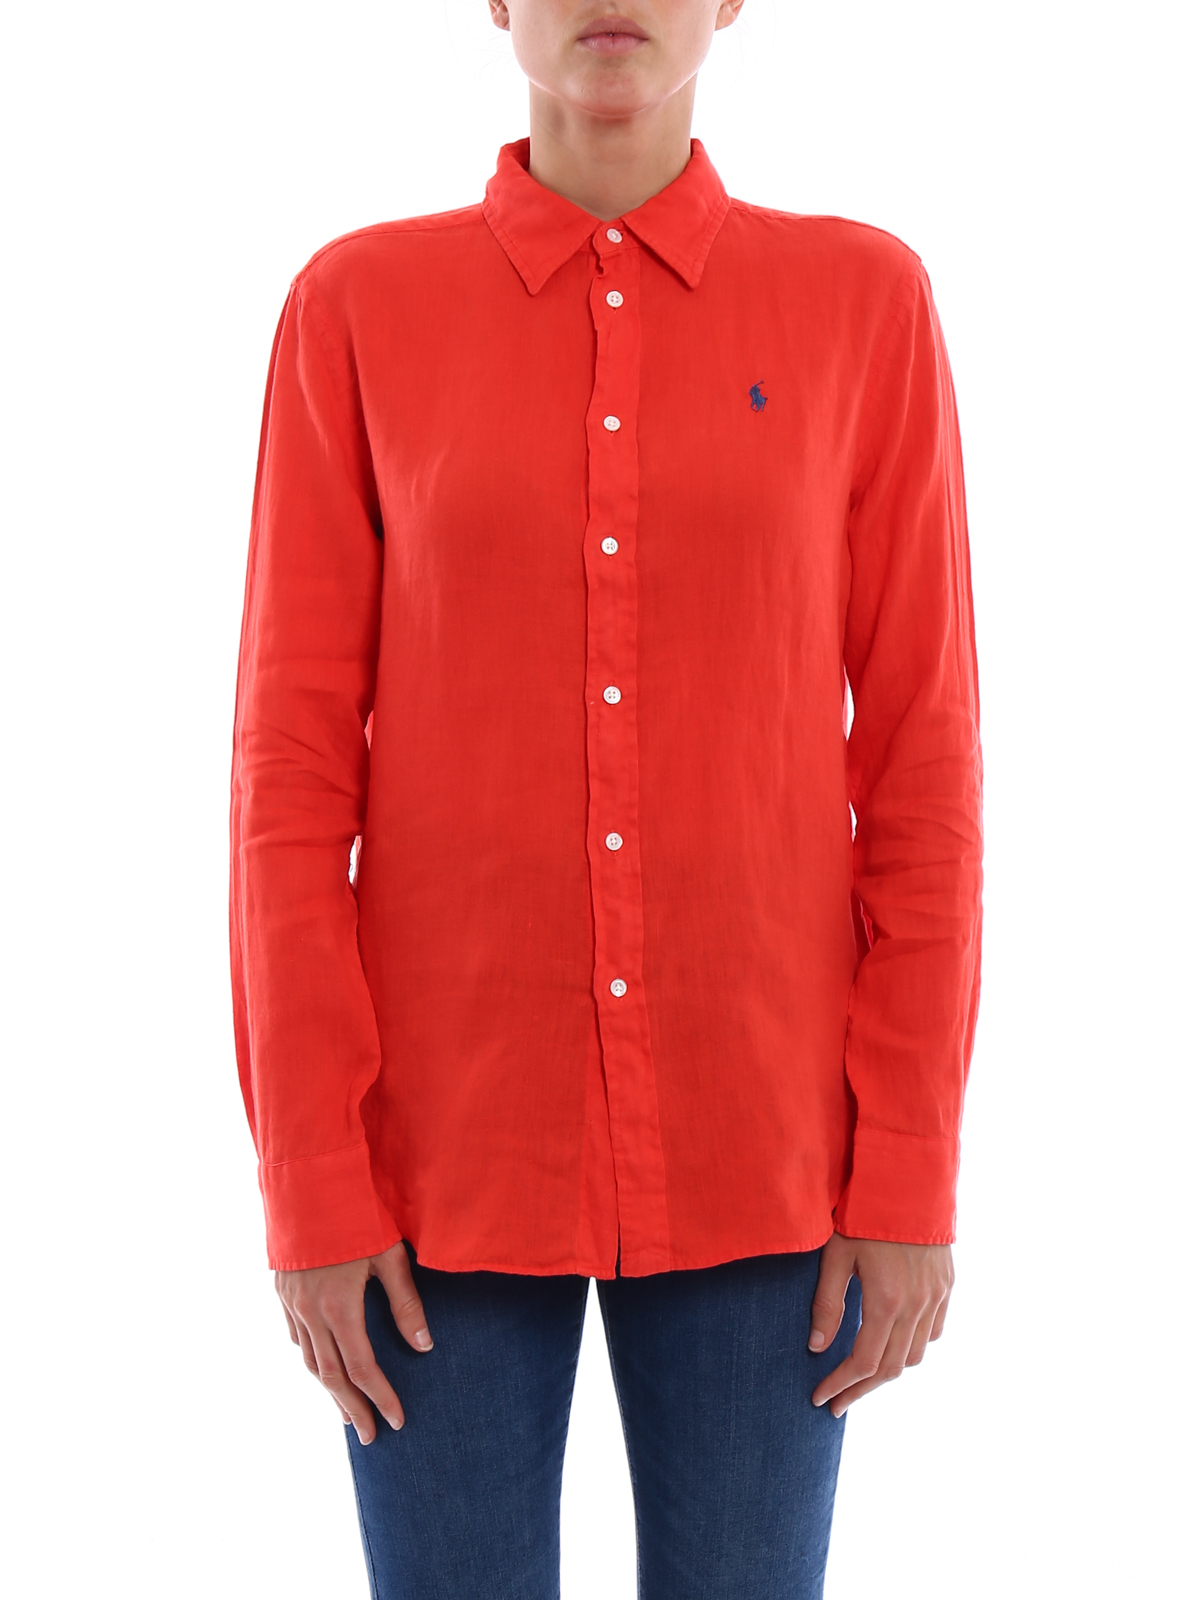 Polo Ralph Lauren - Red linen shirt 